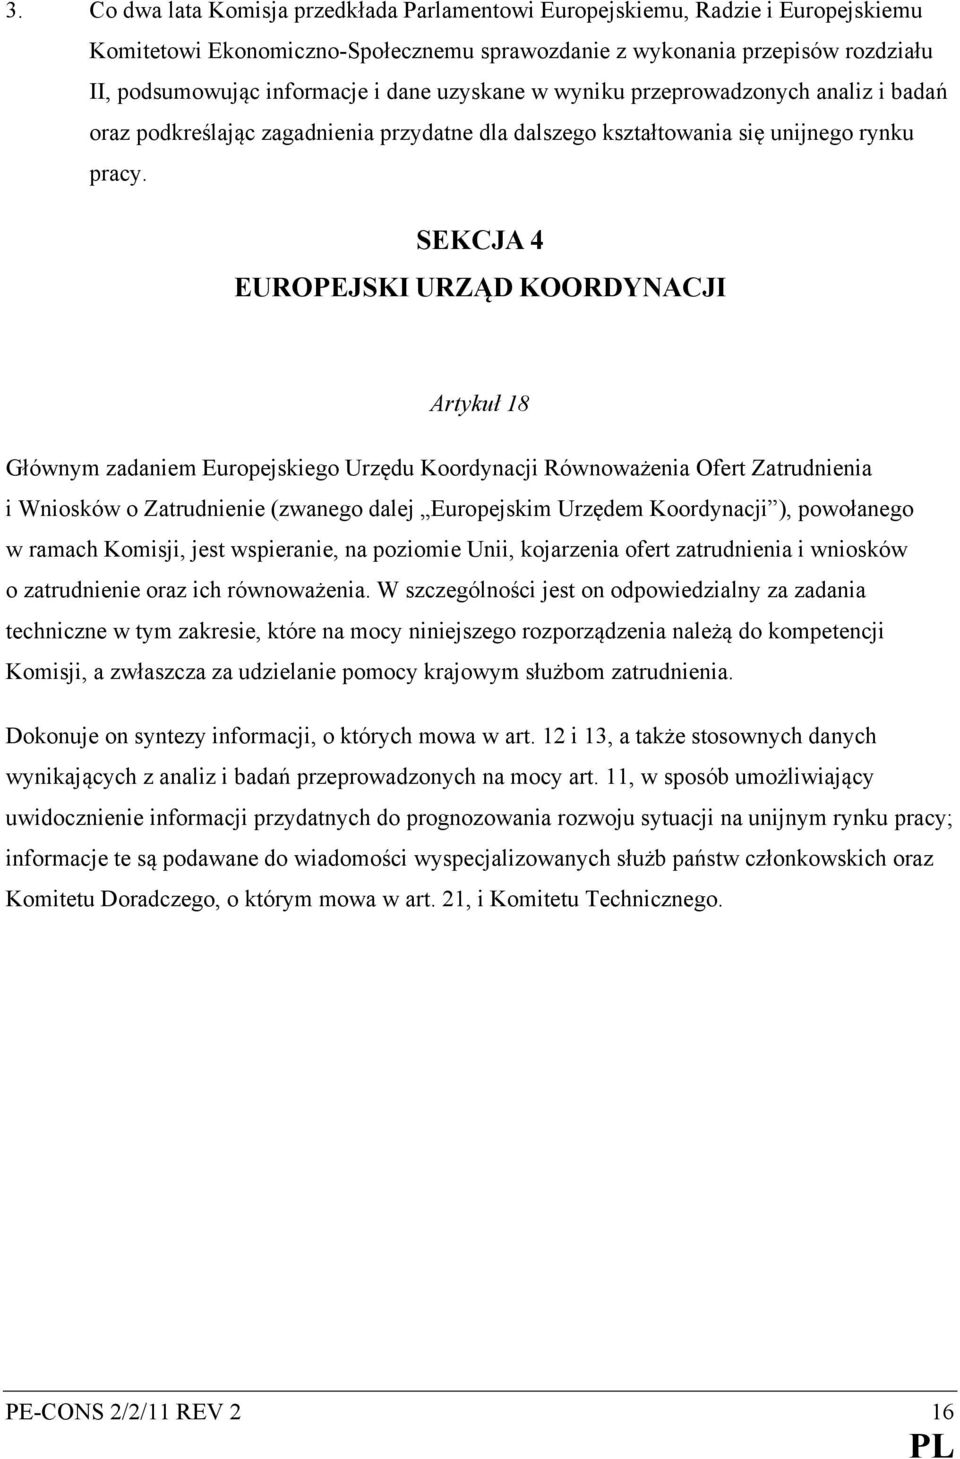 SEKCJA 4 EUROPEJSKI URZĄD KOORDYNACJI Artykuł 18 Głównym zadaniem Europejskiego Urzędu Koordynacji Równoważenia Ofert Zatrudnienia i Wniosków o Zatrudnienie (zwanego dalej Europejskim Urzędem